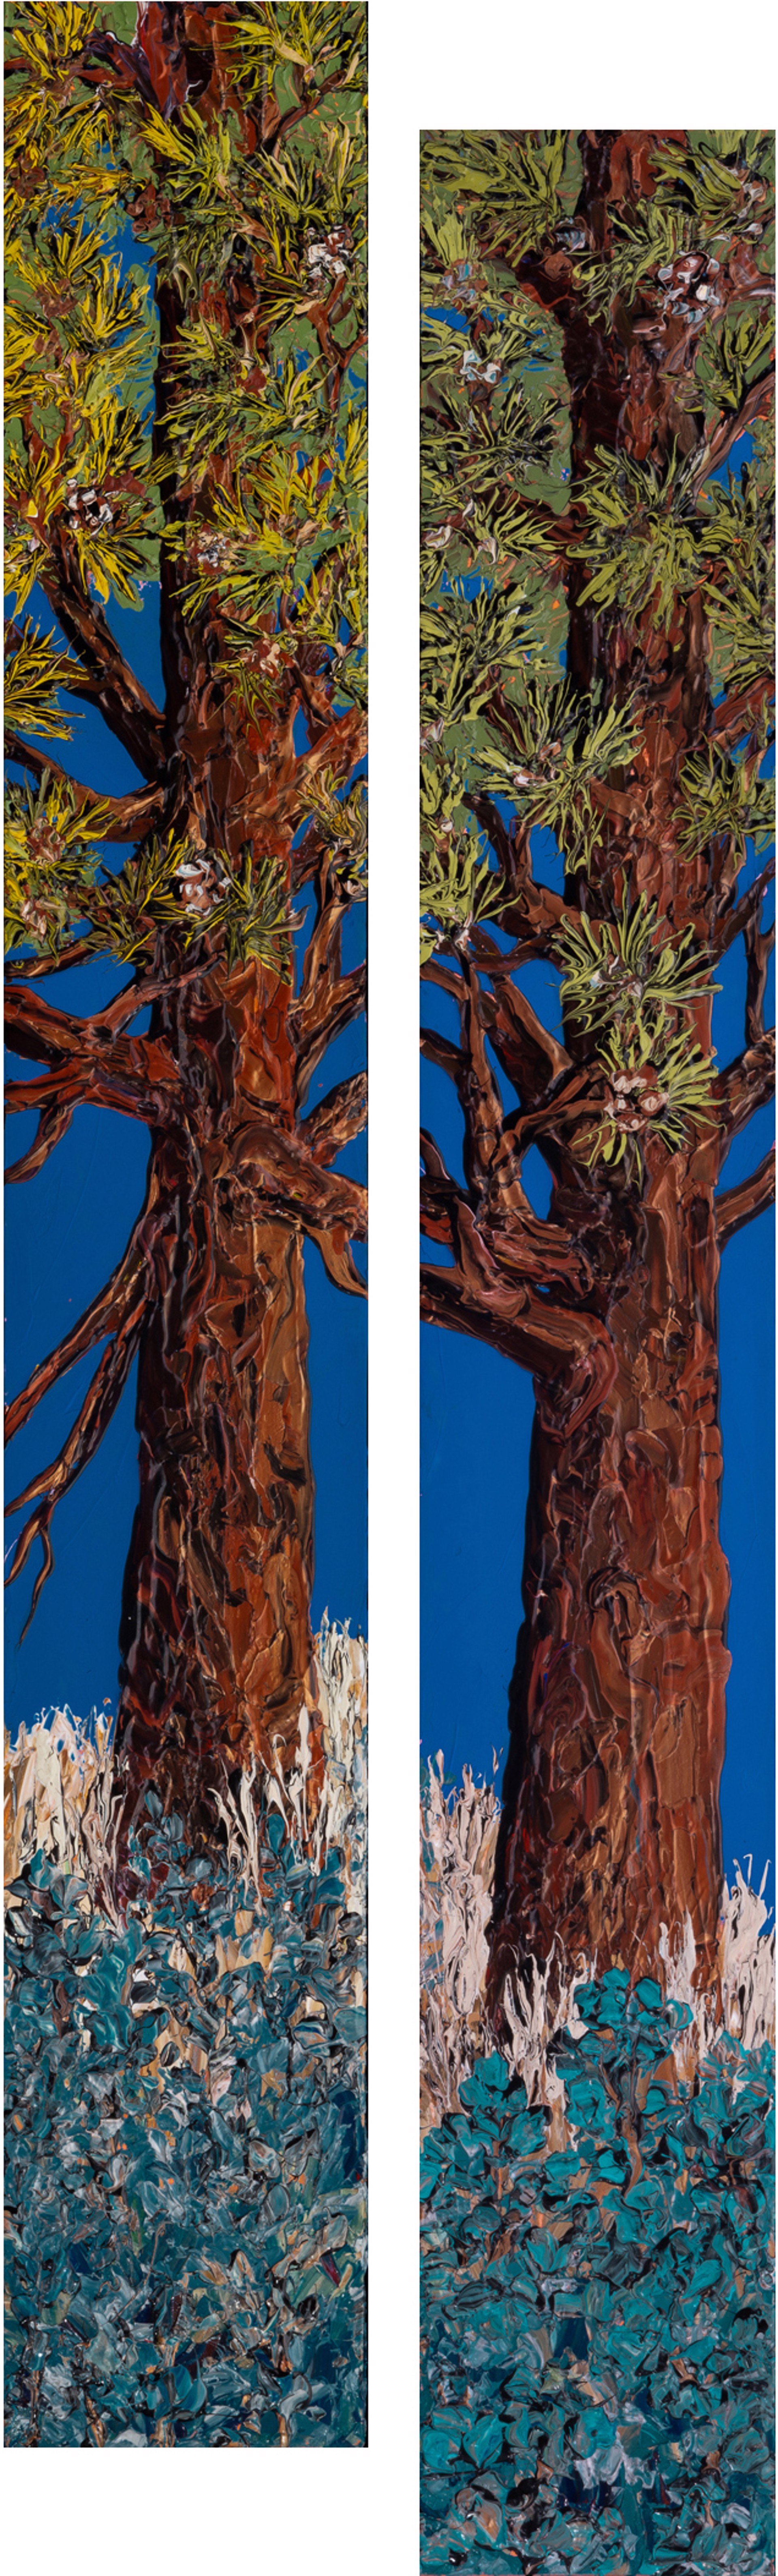 Piñon Pine #1 & #2 by Sue Averell